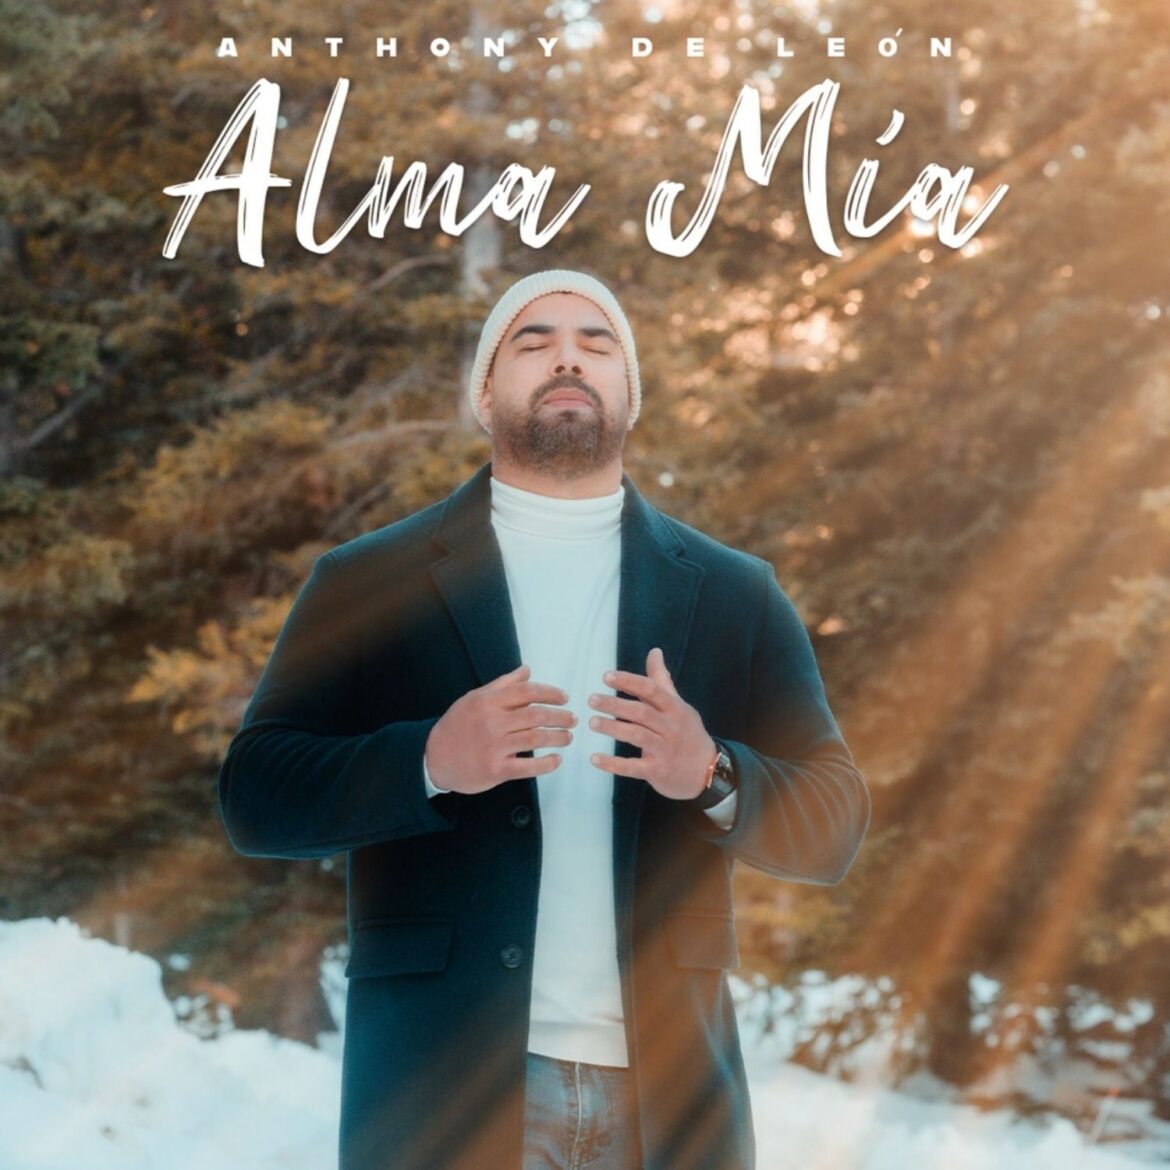 El cantante Anthony de León presenta su primer sencillo musical titulado “Alma Mía”